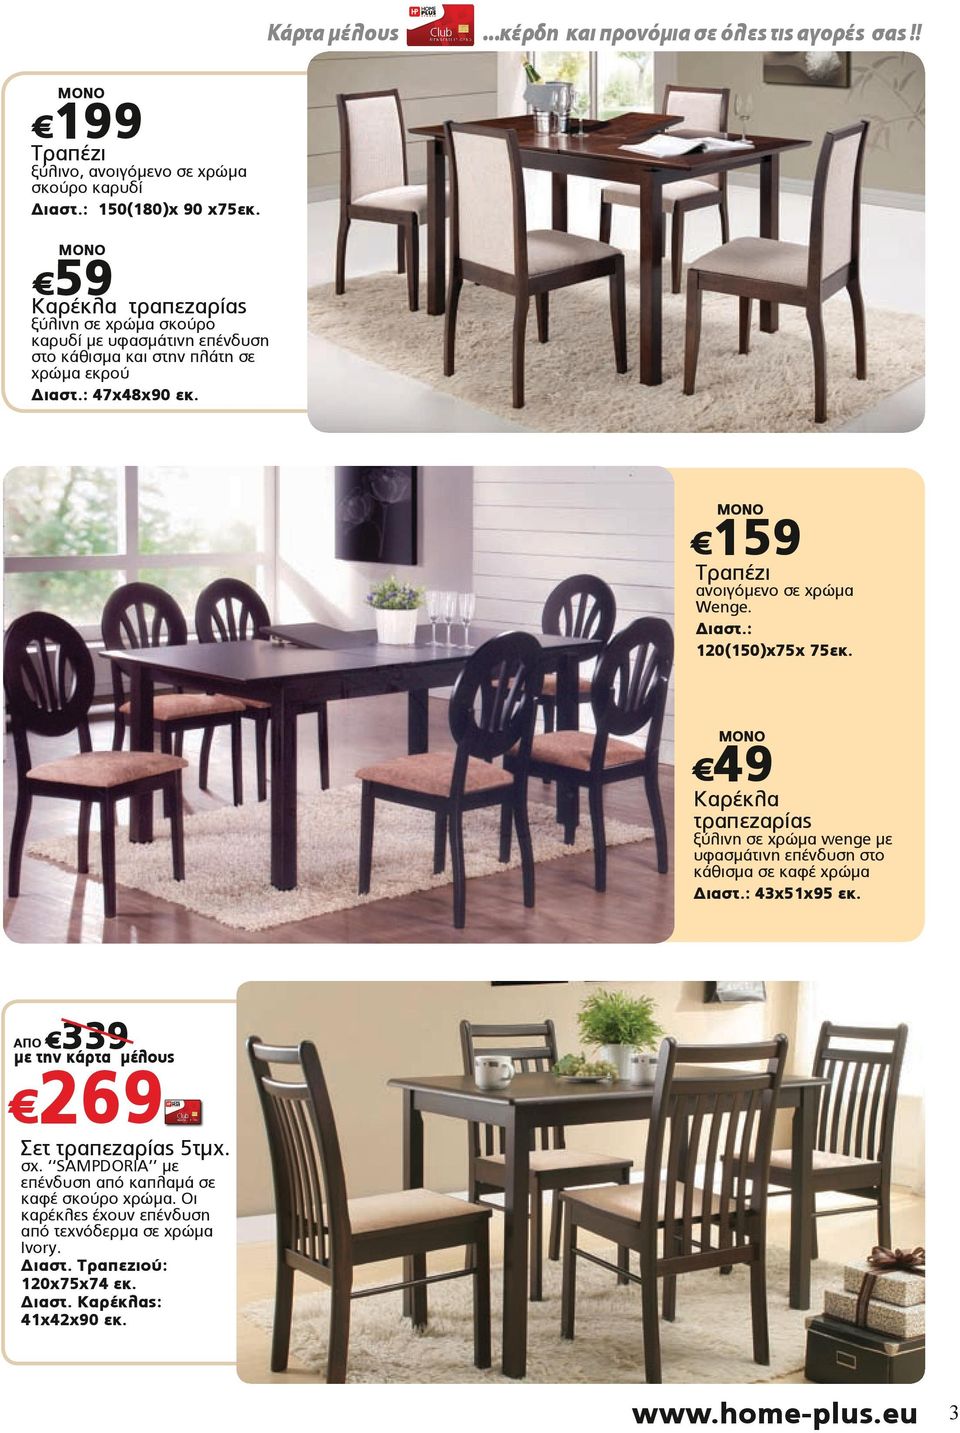 159 Τραπέζι ανοιγόμενο σε χρώμα Wenge. 120(150)x75x 75εκ. 49 Καρέκλα τραπεζαρίας ξύλινη σε χρώμα wenge με υφασμάτινη επένδυση στο κάθισμα σε καφέ χρώμα 43x51x95 εκ.